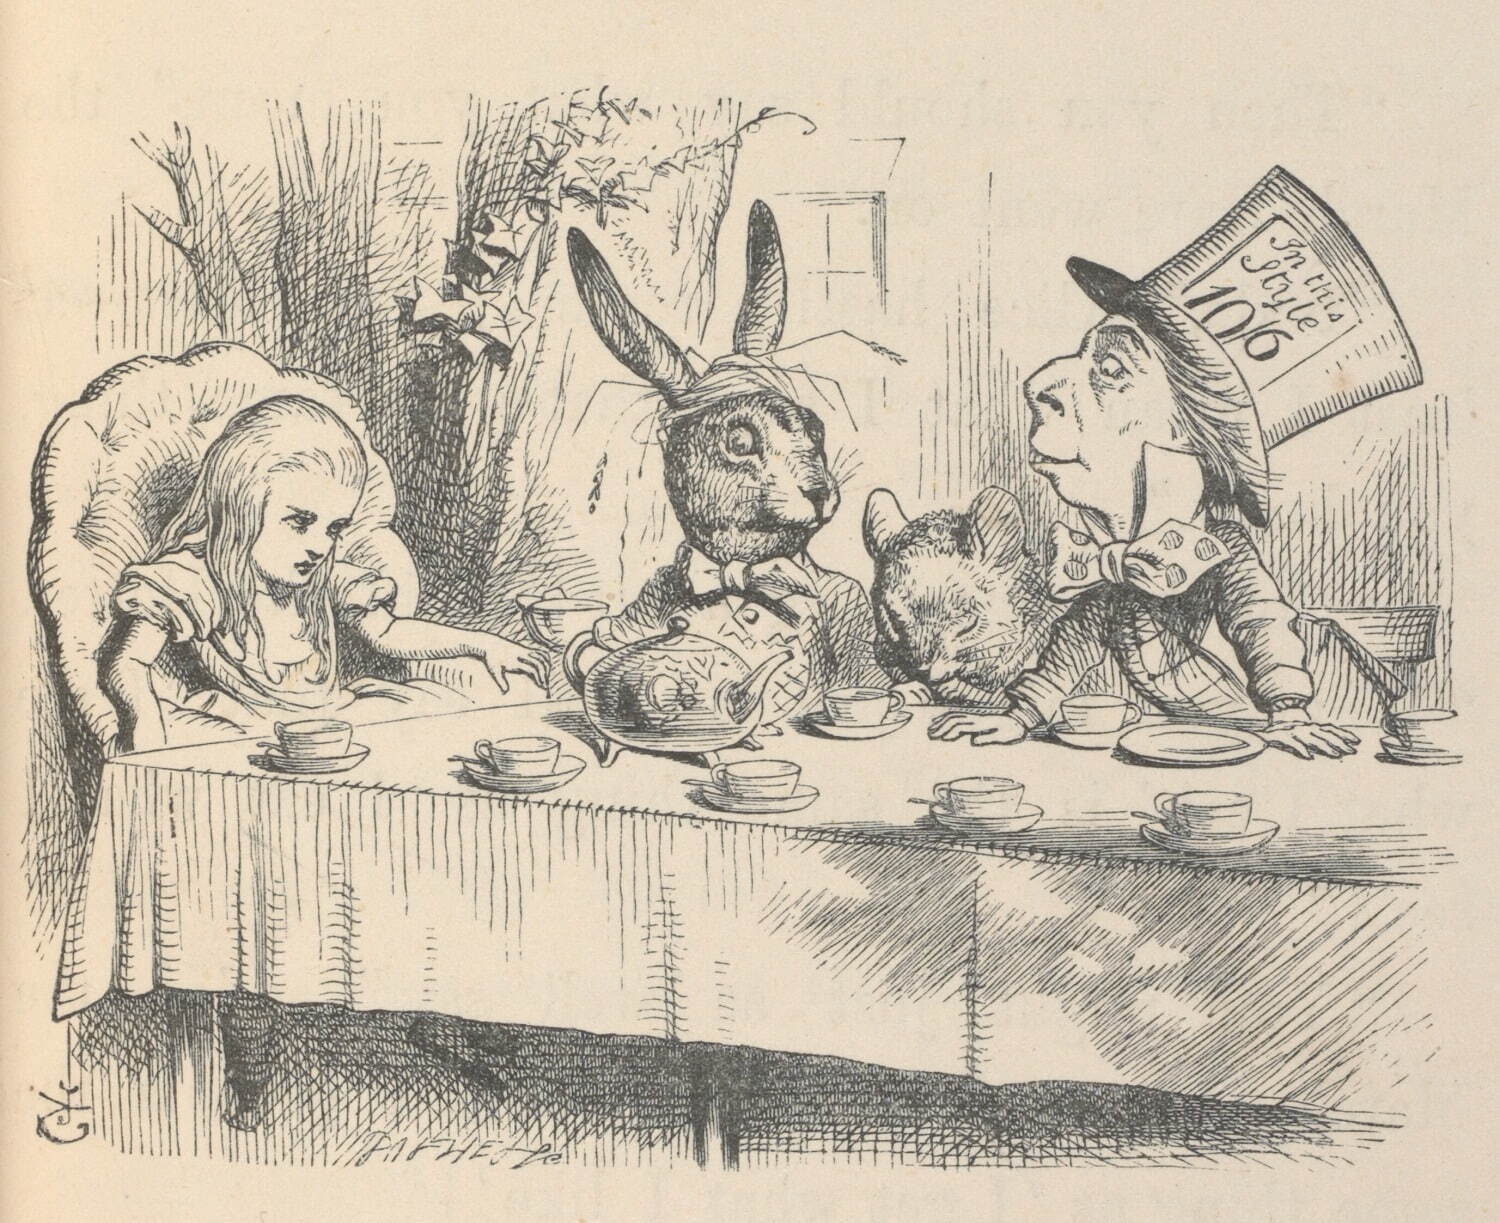 マッド・ハッターのお茶会でのアリス、『不思議の国のアリス』初刊行版本より、ジョン・テニエル画、1866年、V&A内ナショナル・アート図書館所蔵